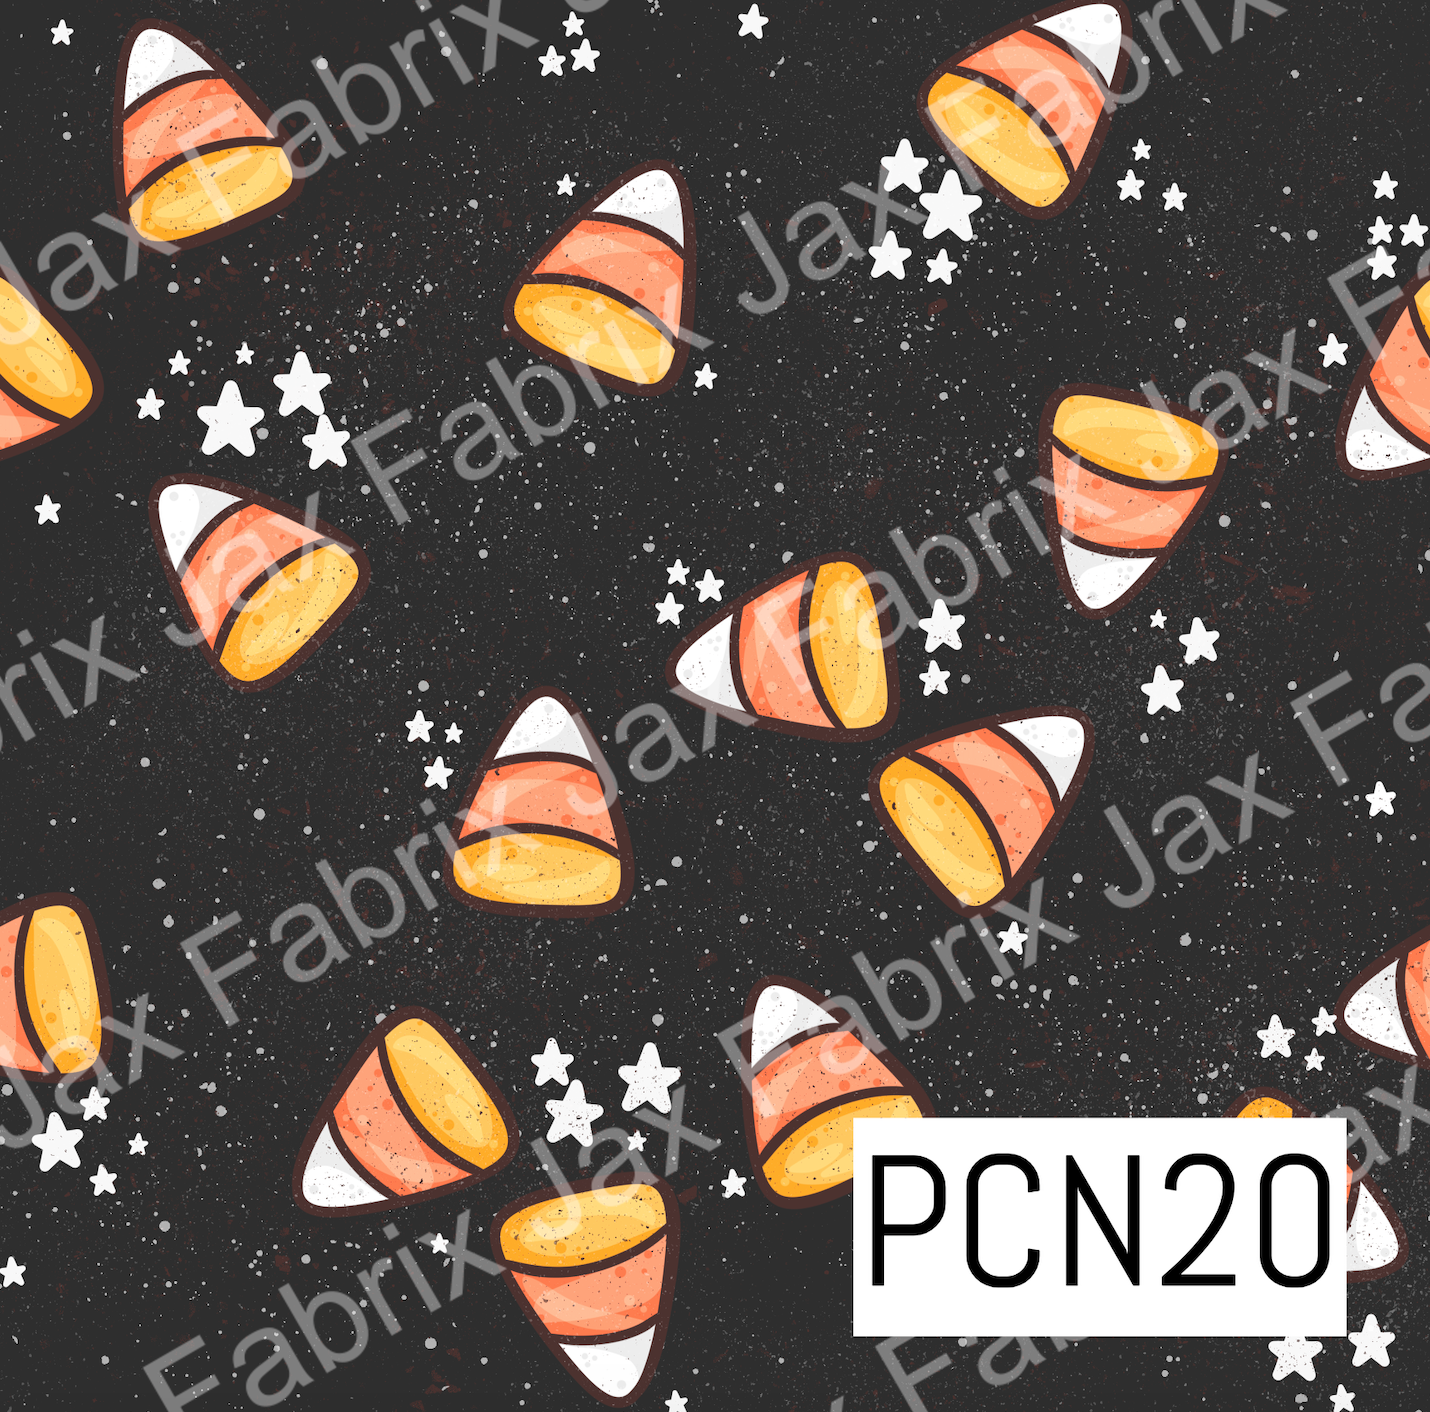 Candy Corn PCN20